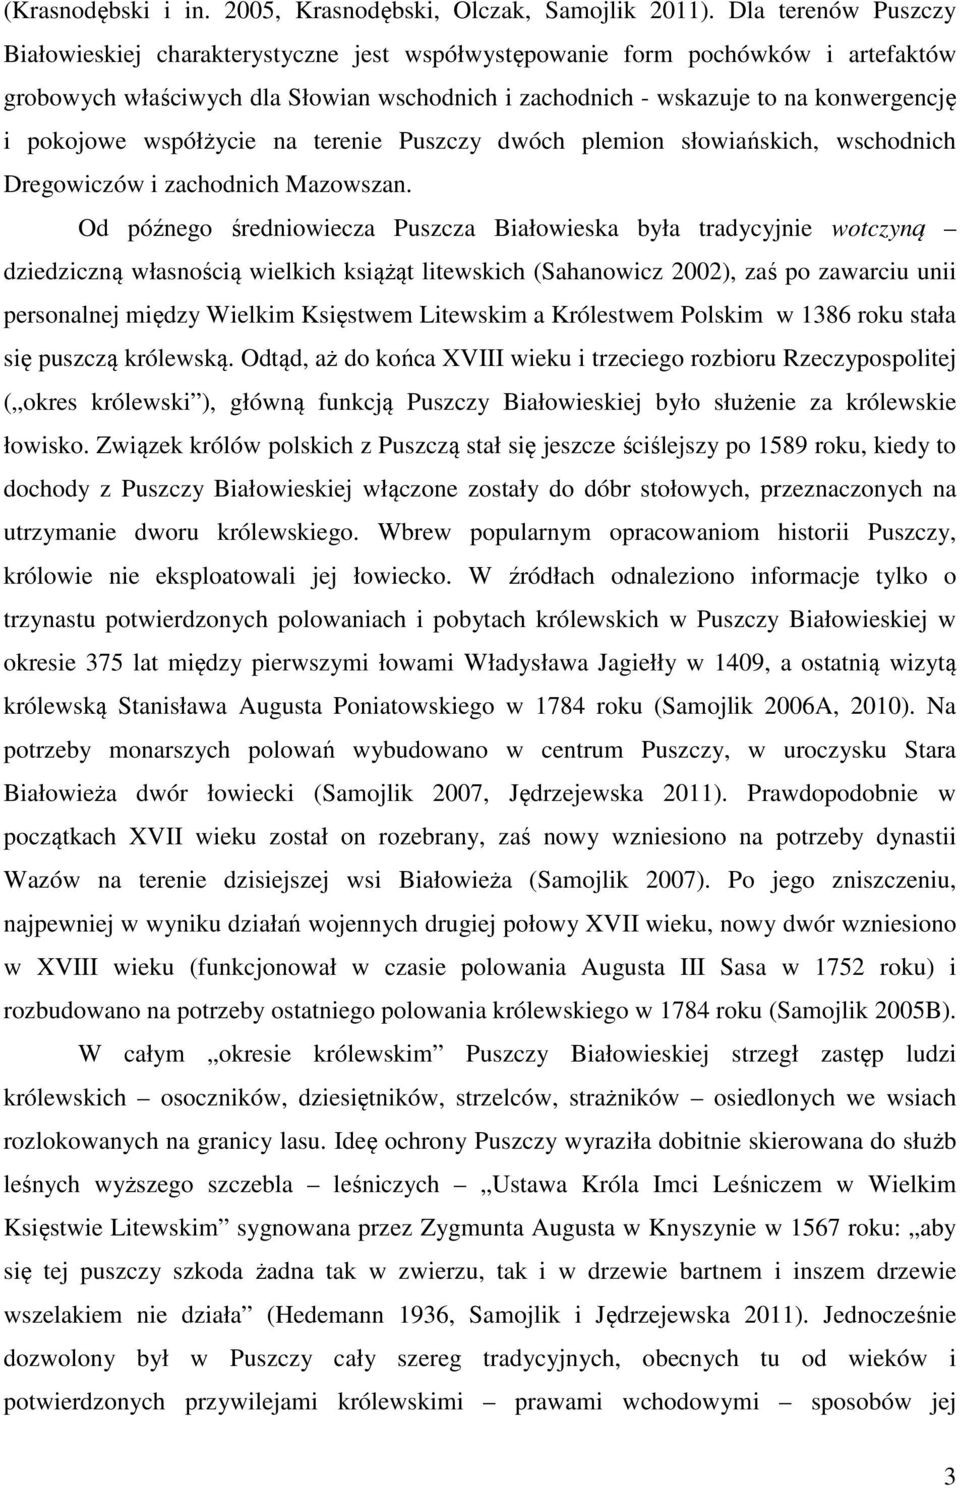 pokojowe współżycie na terenie Puszczy dwóch plemion słowiańskich, wschodnich Dregowiczów i zachodnich Mazowszan.